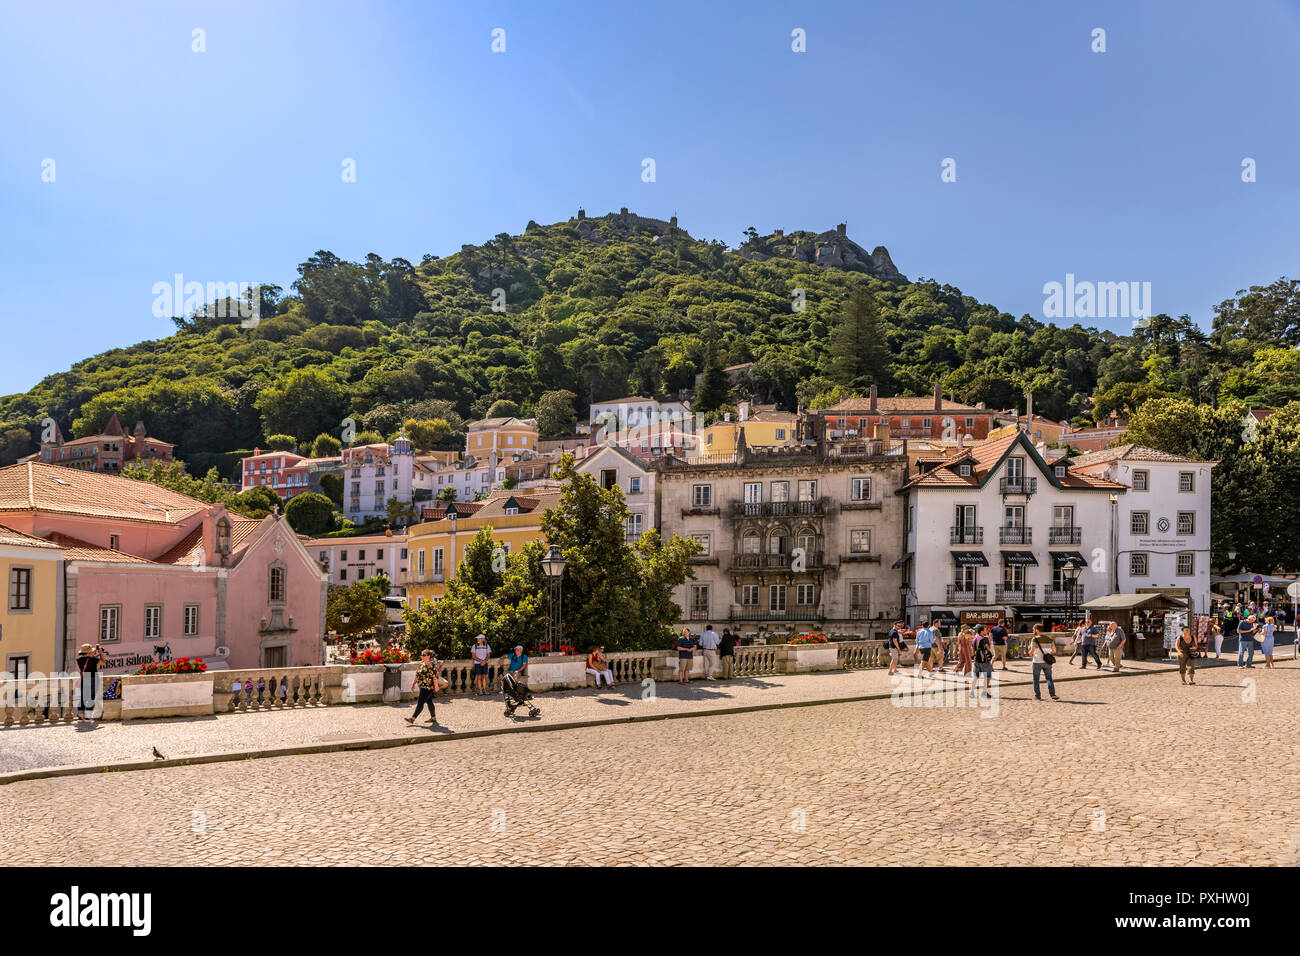 Vue de la ville de Sintra du palais royal de Sintra, Portugal Banque D'Images